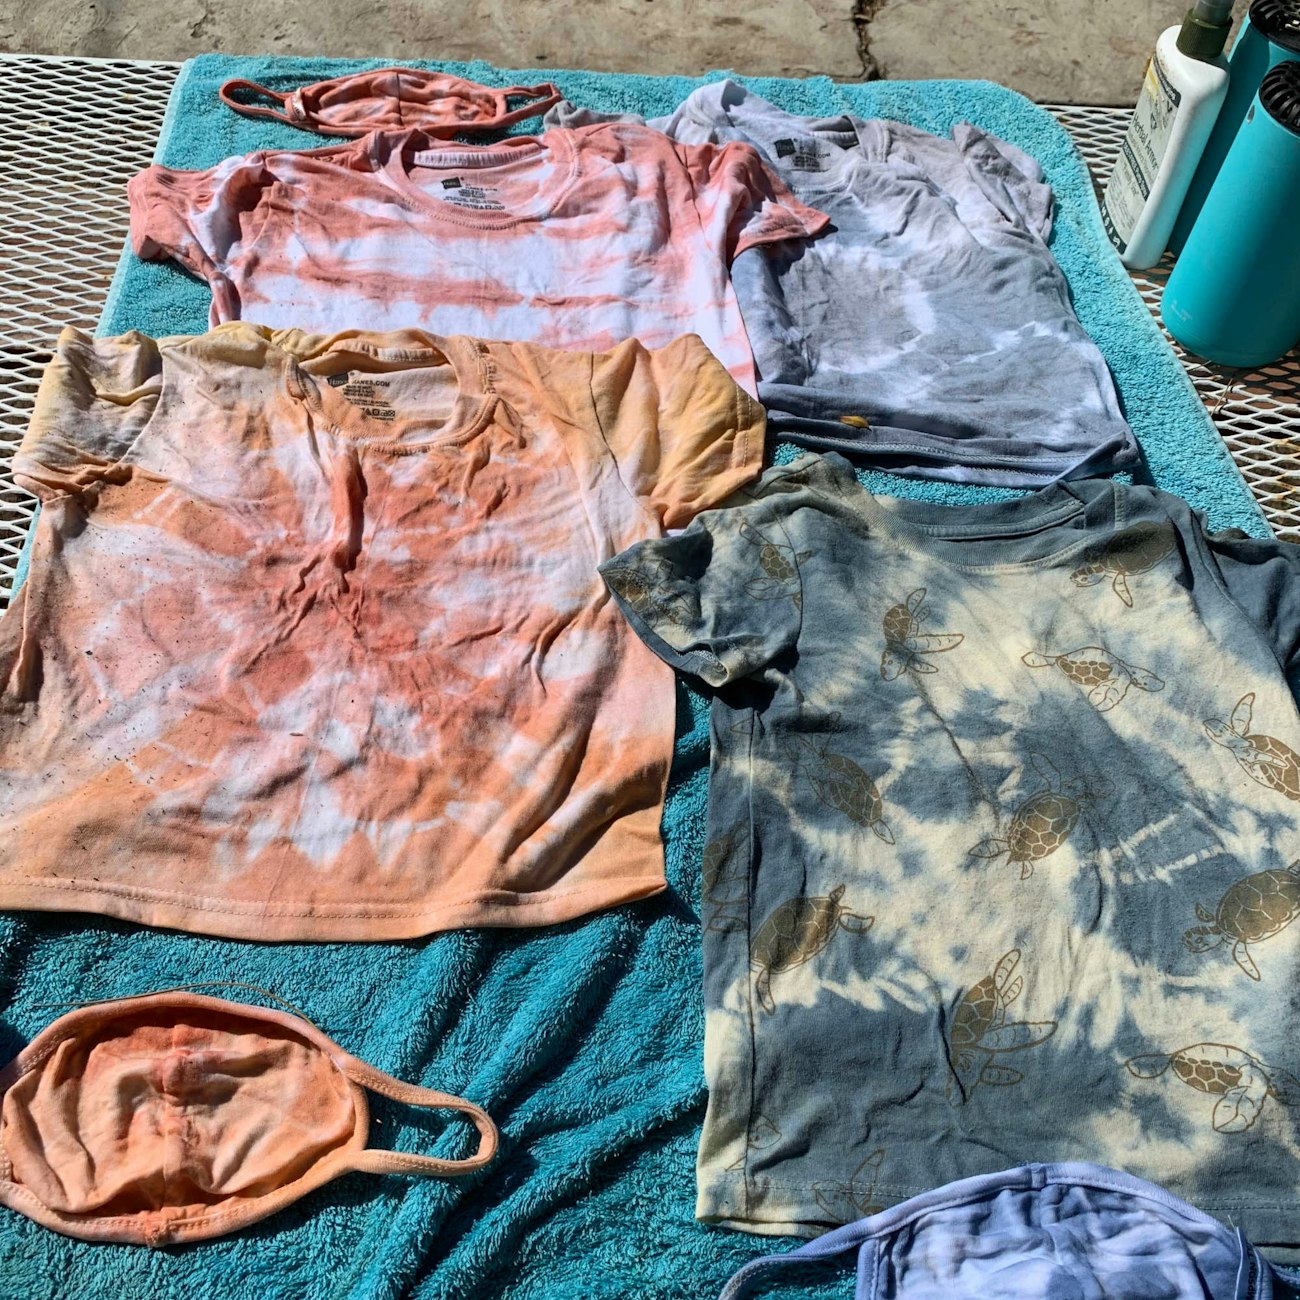 Mud and Indigo dyed t-shirts